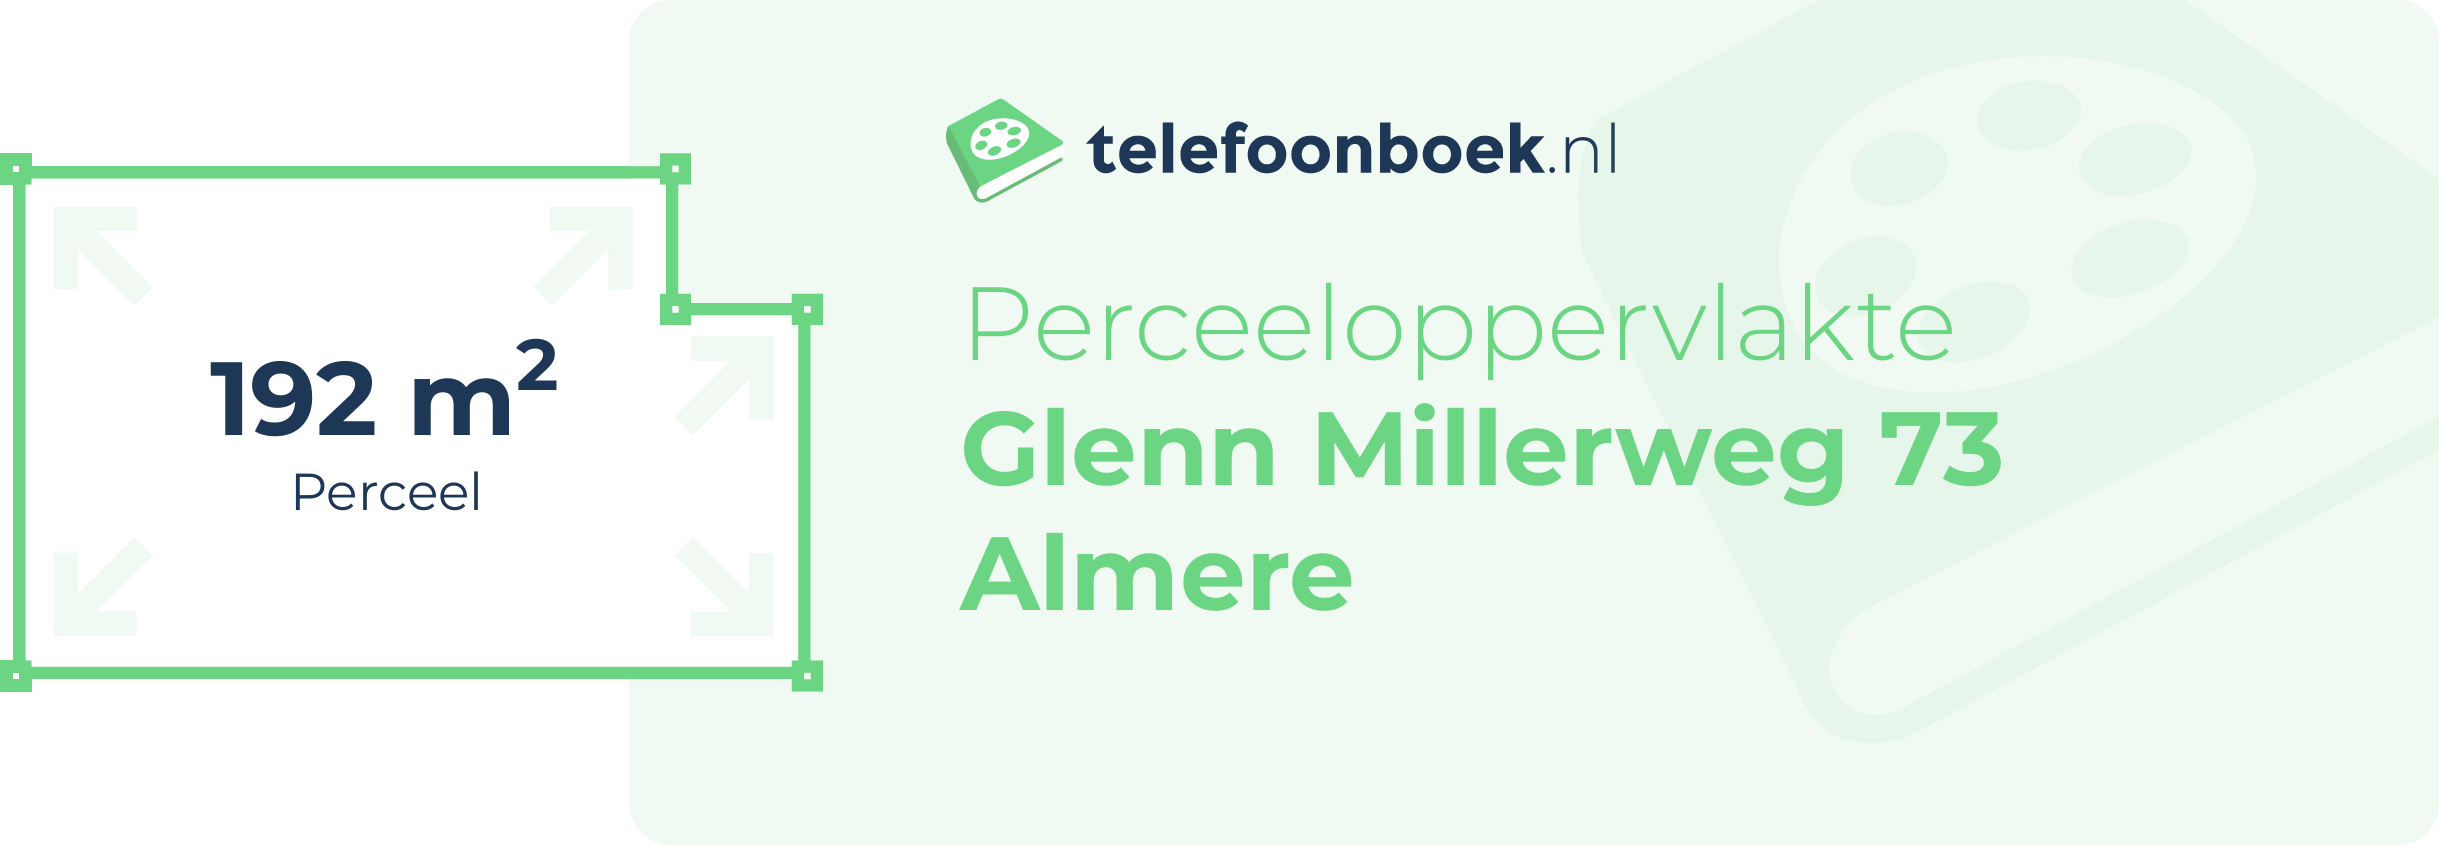 Perceeloppervlakte Glenn Millerweg 73 Almere